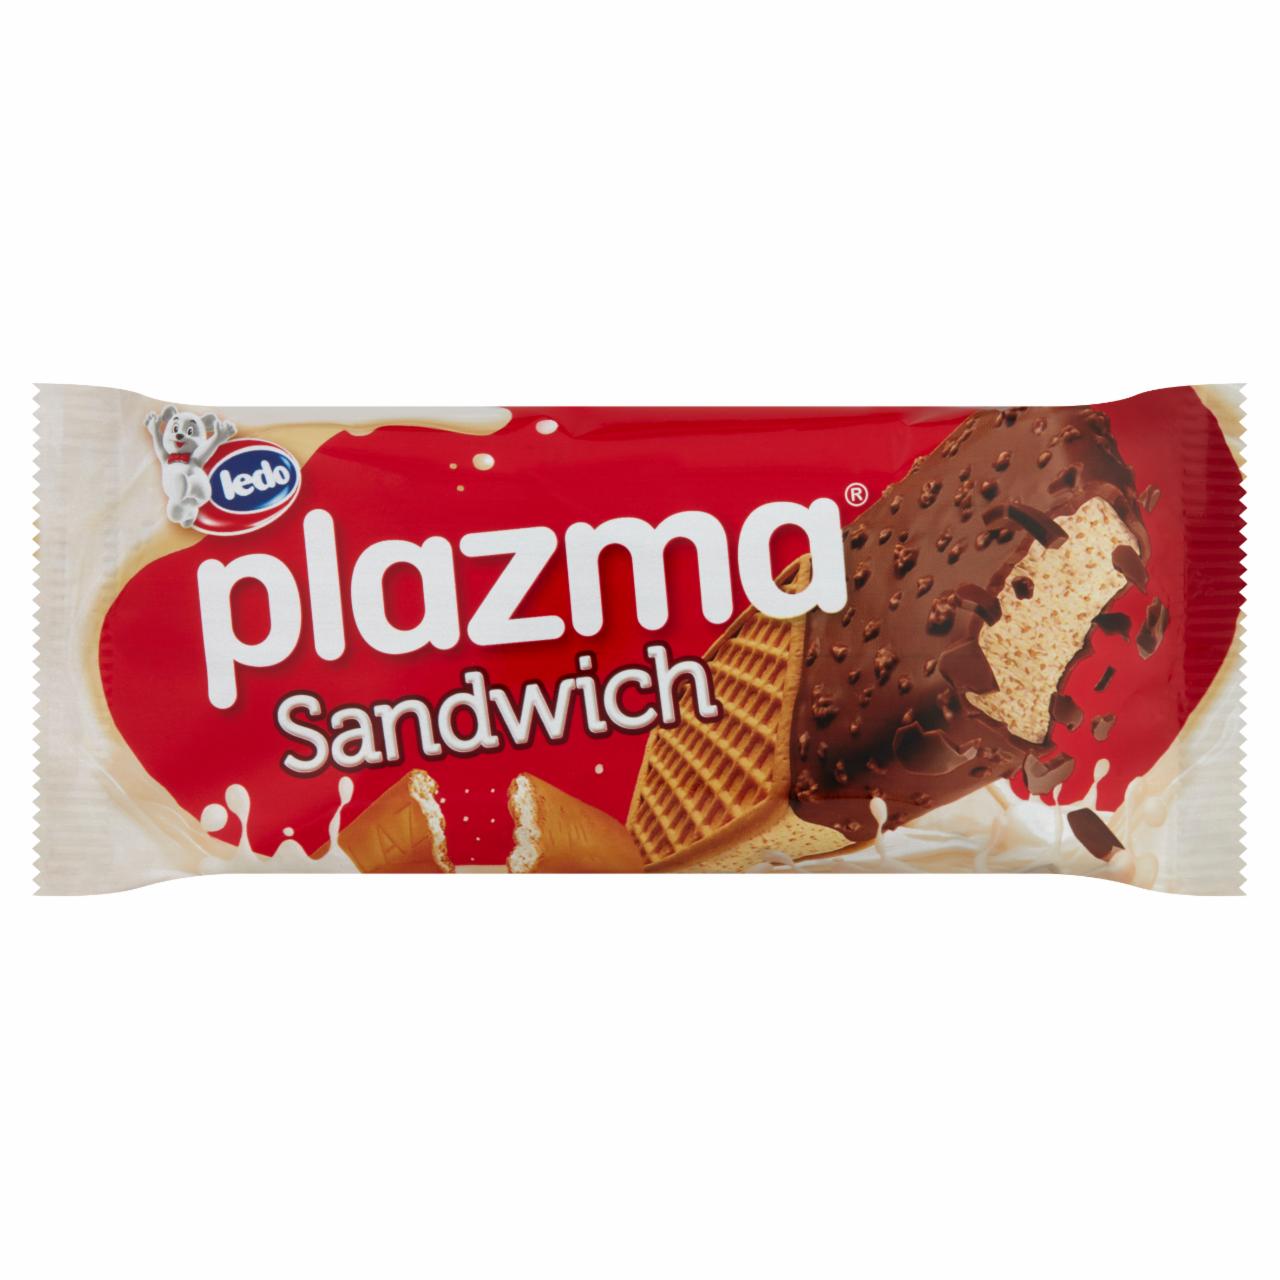 Képek - Ledo Plazma Sandwich keksz ízű jégkrém kekszbe töltve, tejcsokoládé ízű bevonattal 129 ml